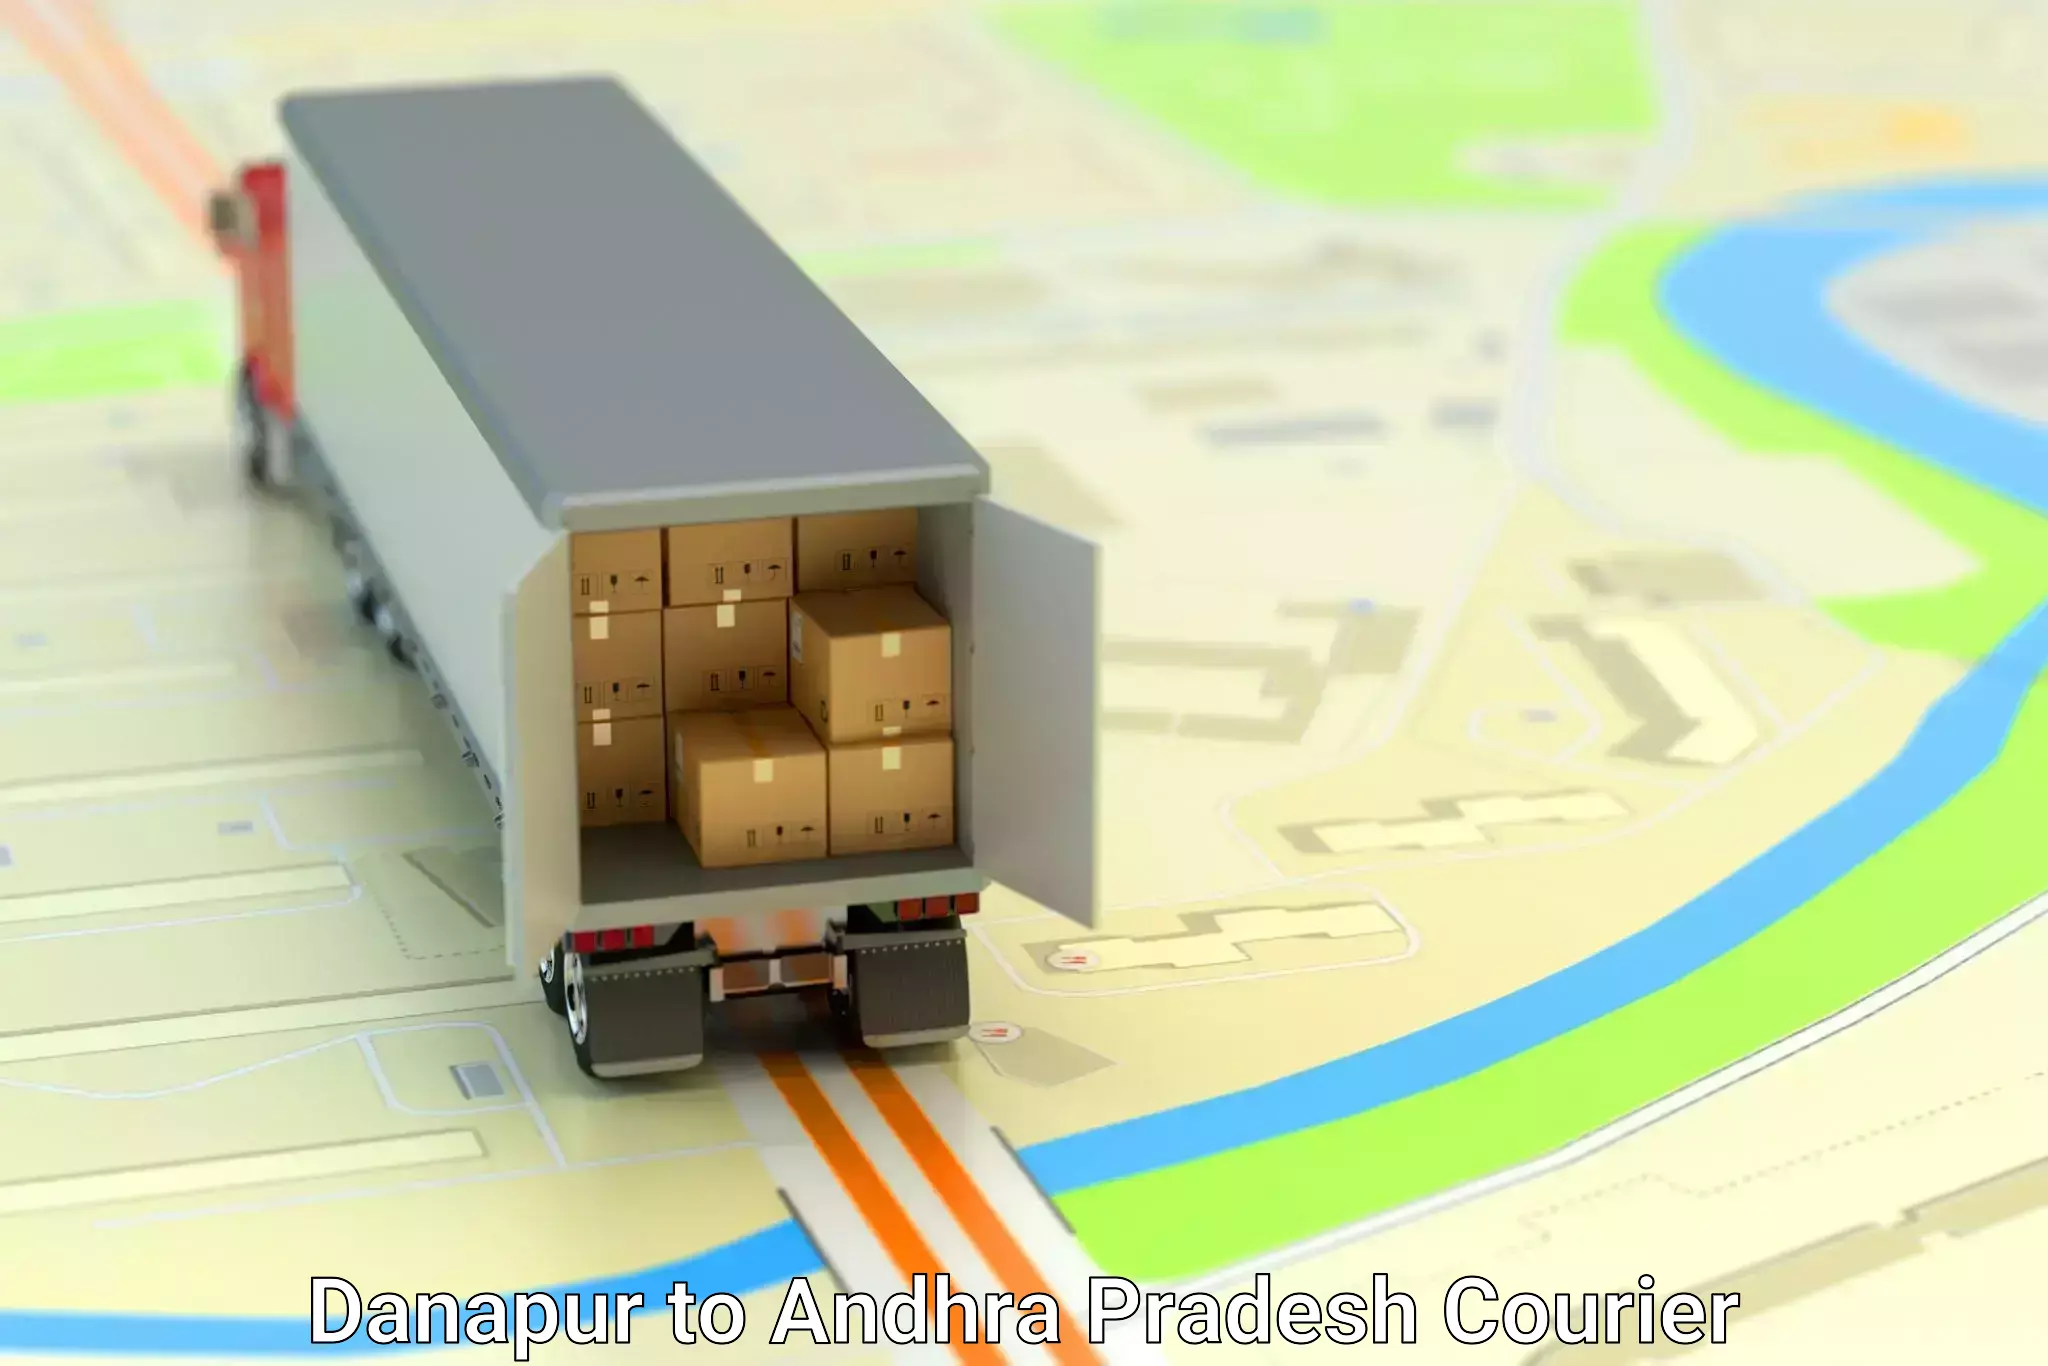 Furniture transport experts Danapur to Andhra Pradesh